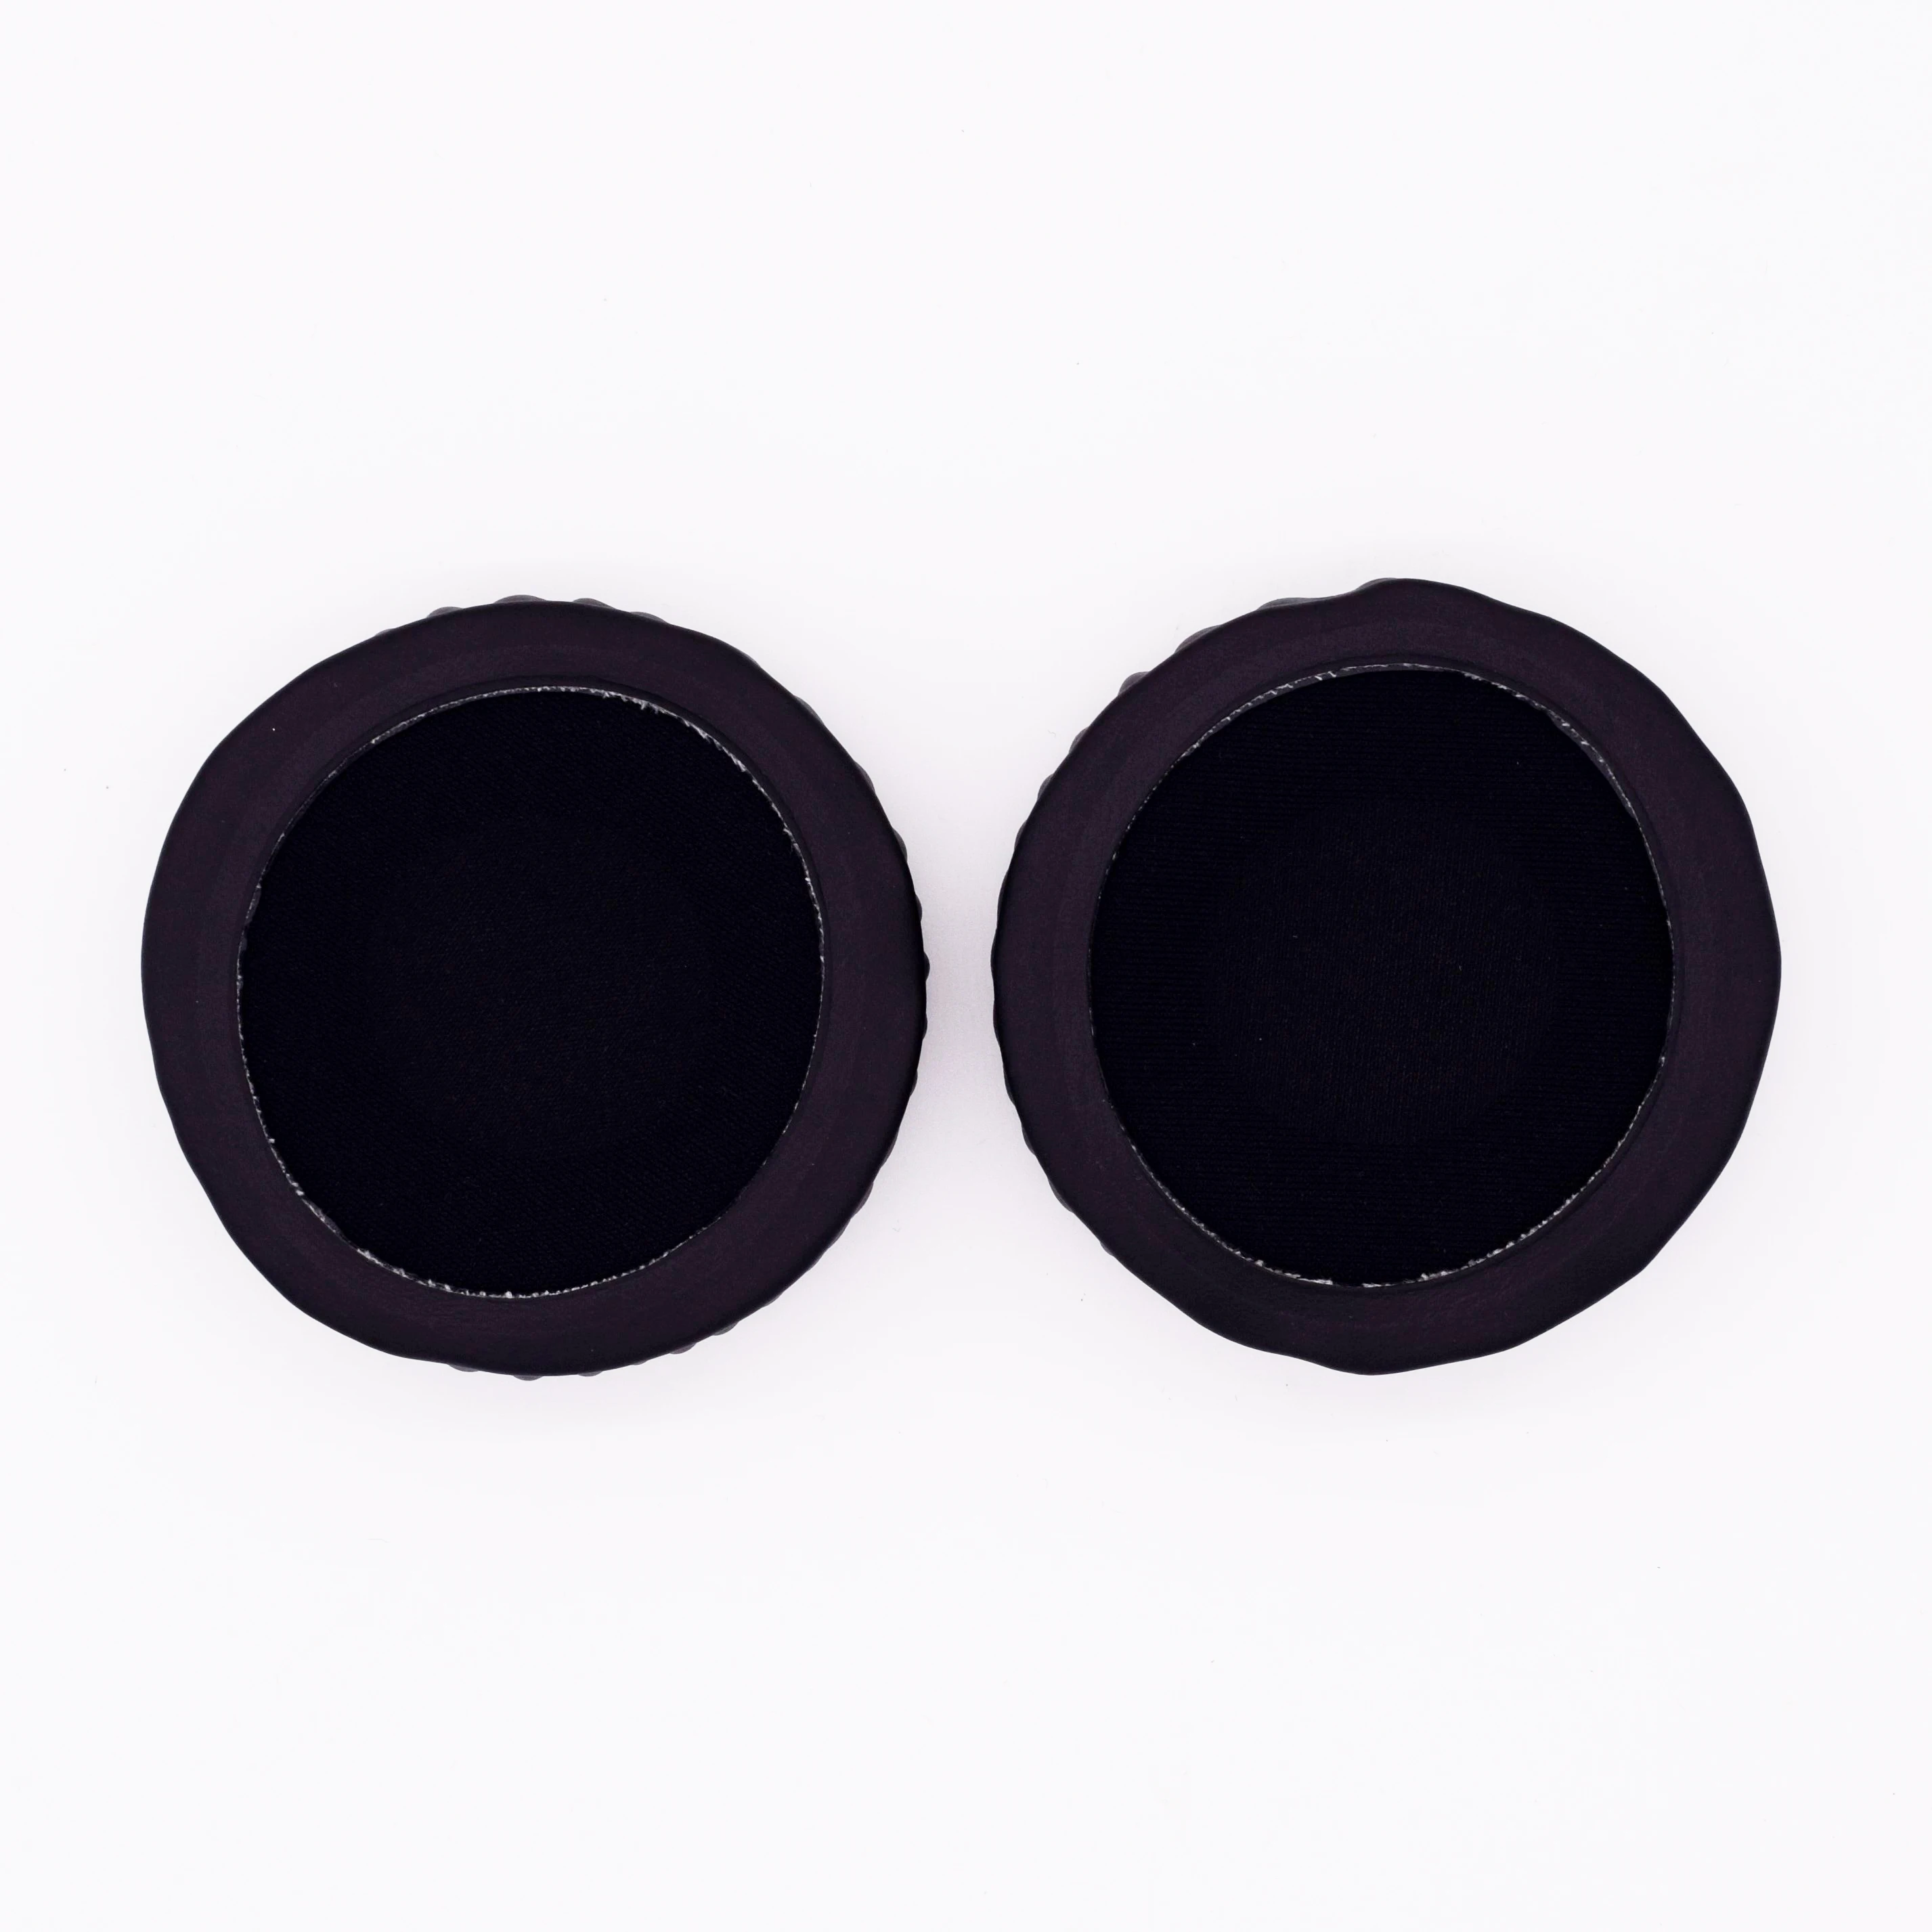 Almohadillas de PU para auriculares JVC HA-S31M, accesorio de repuesto de  cuero para auriculares, HA, S31M, S31BT, HA-S31BT